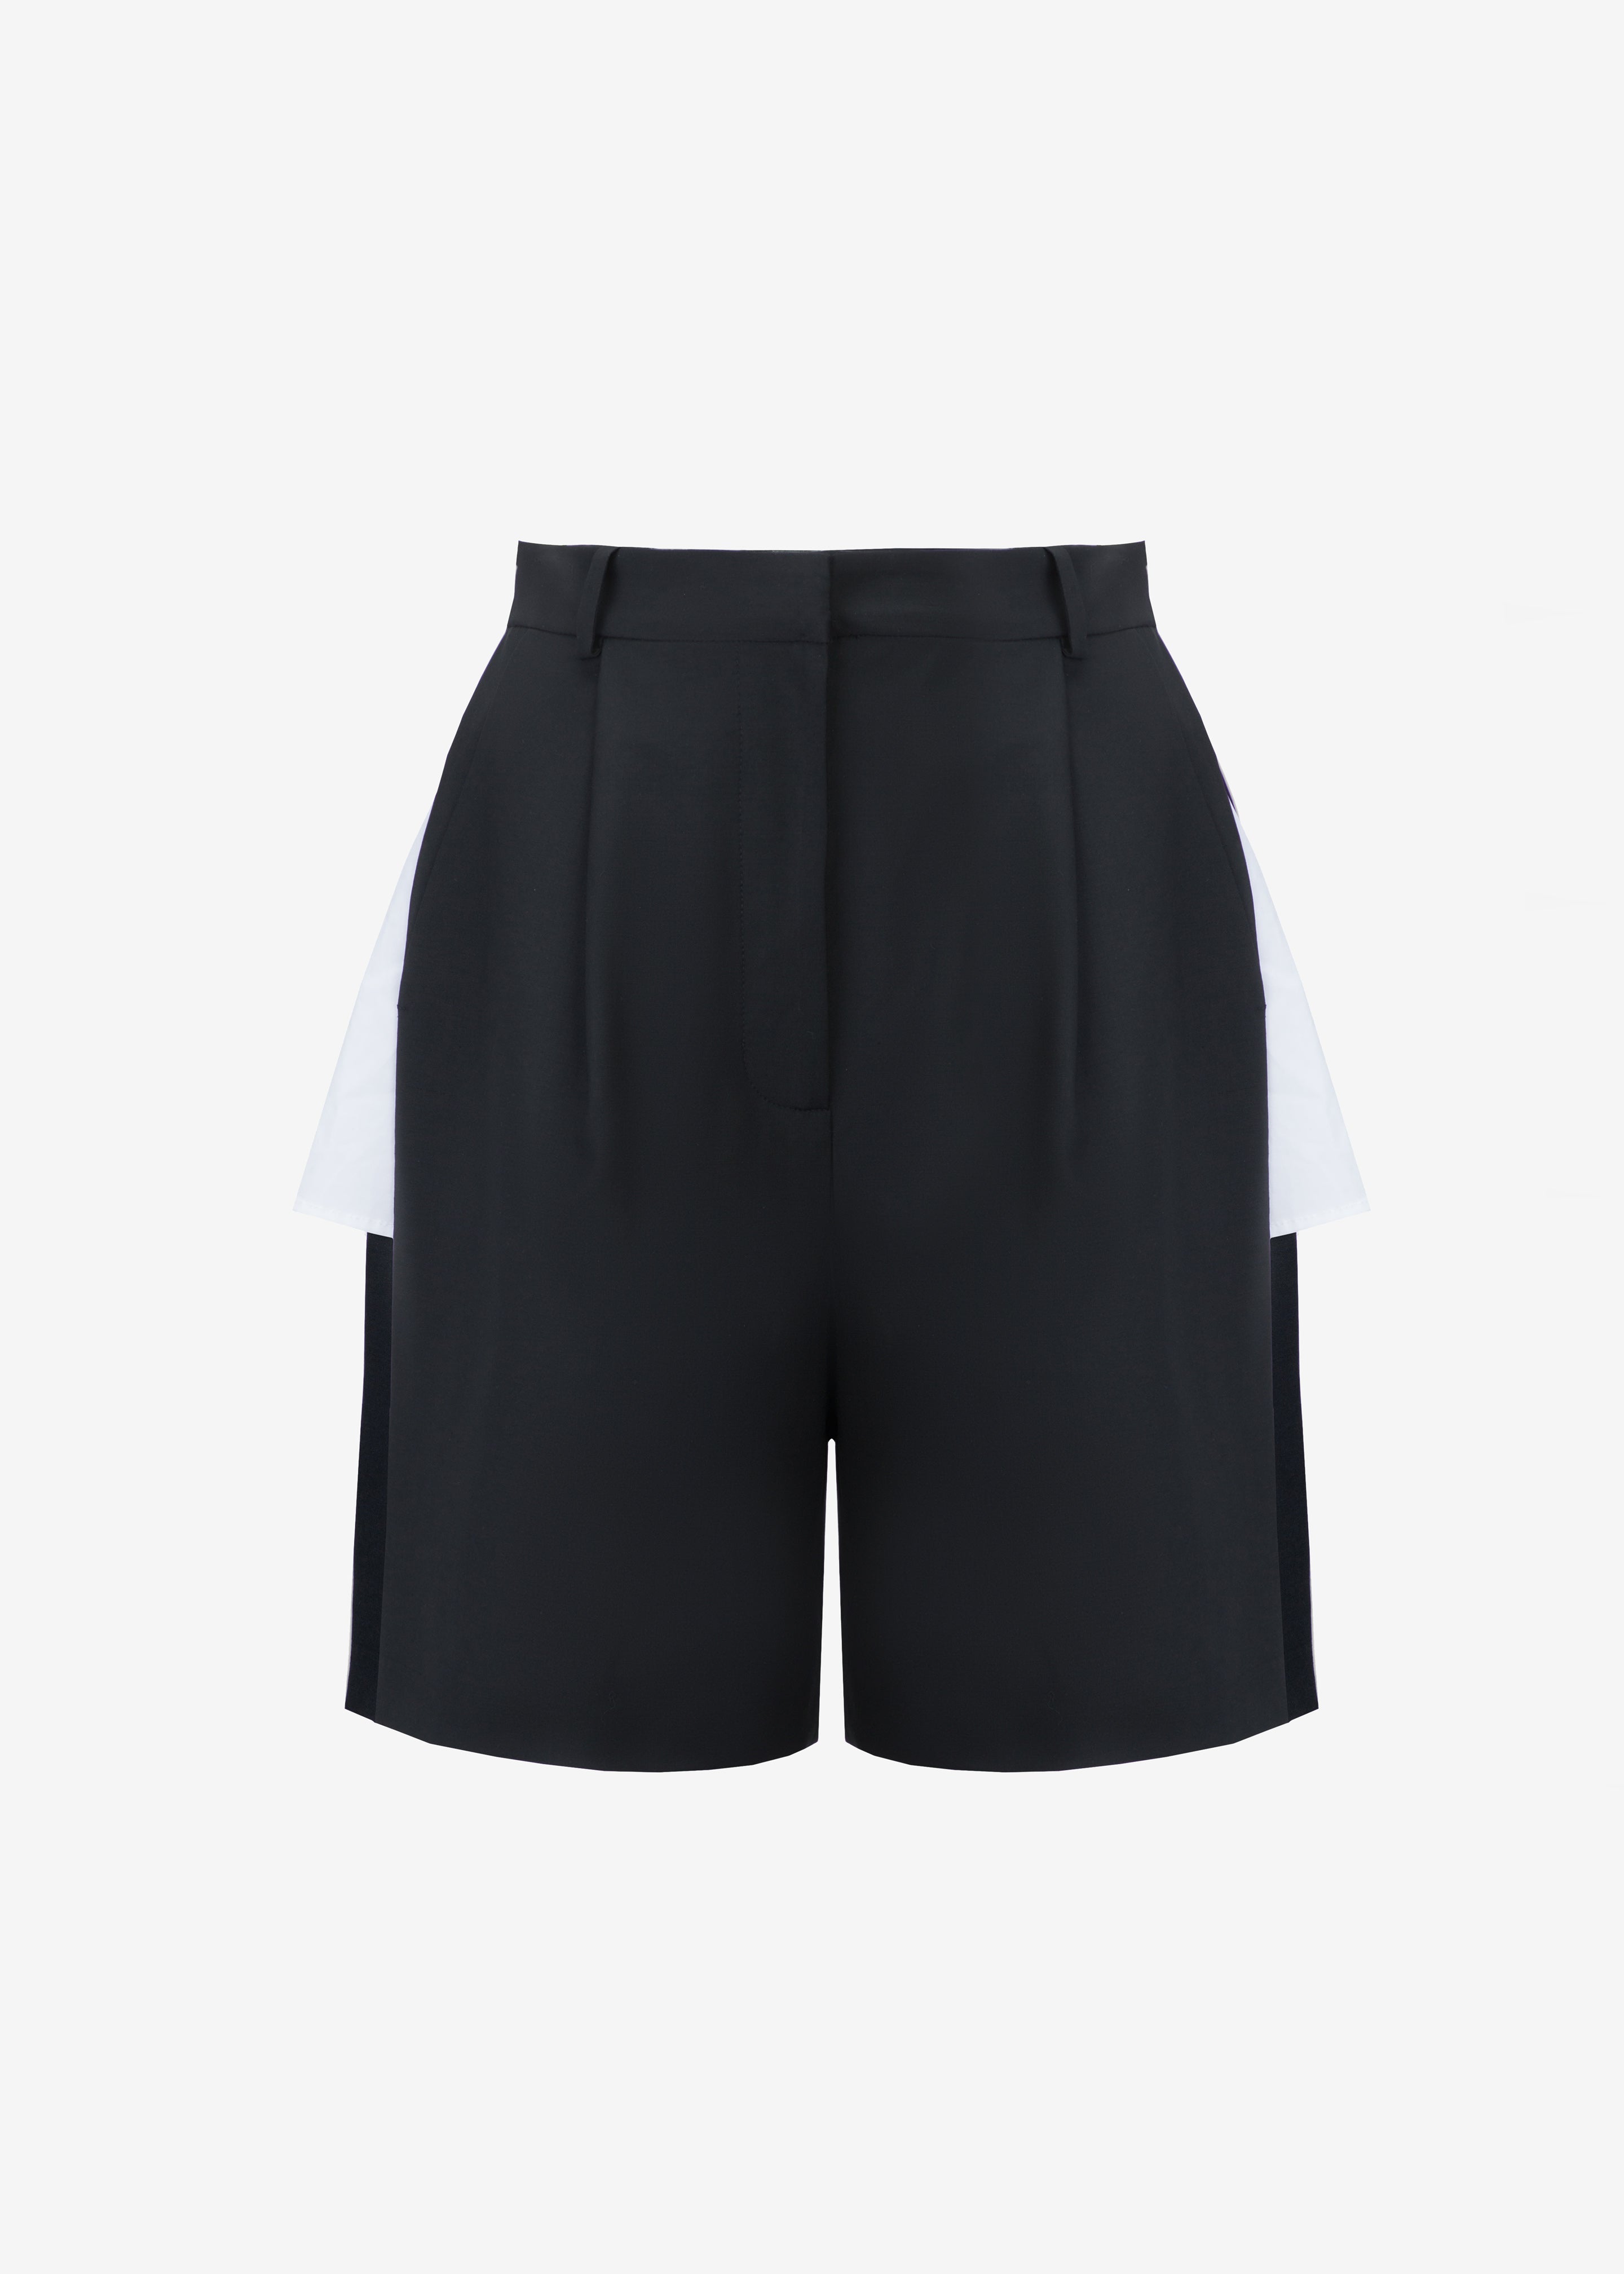 Bevza Shorts With Slits - Black - 9